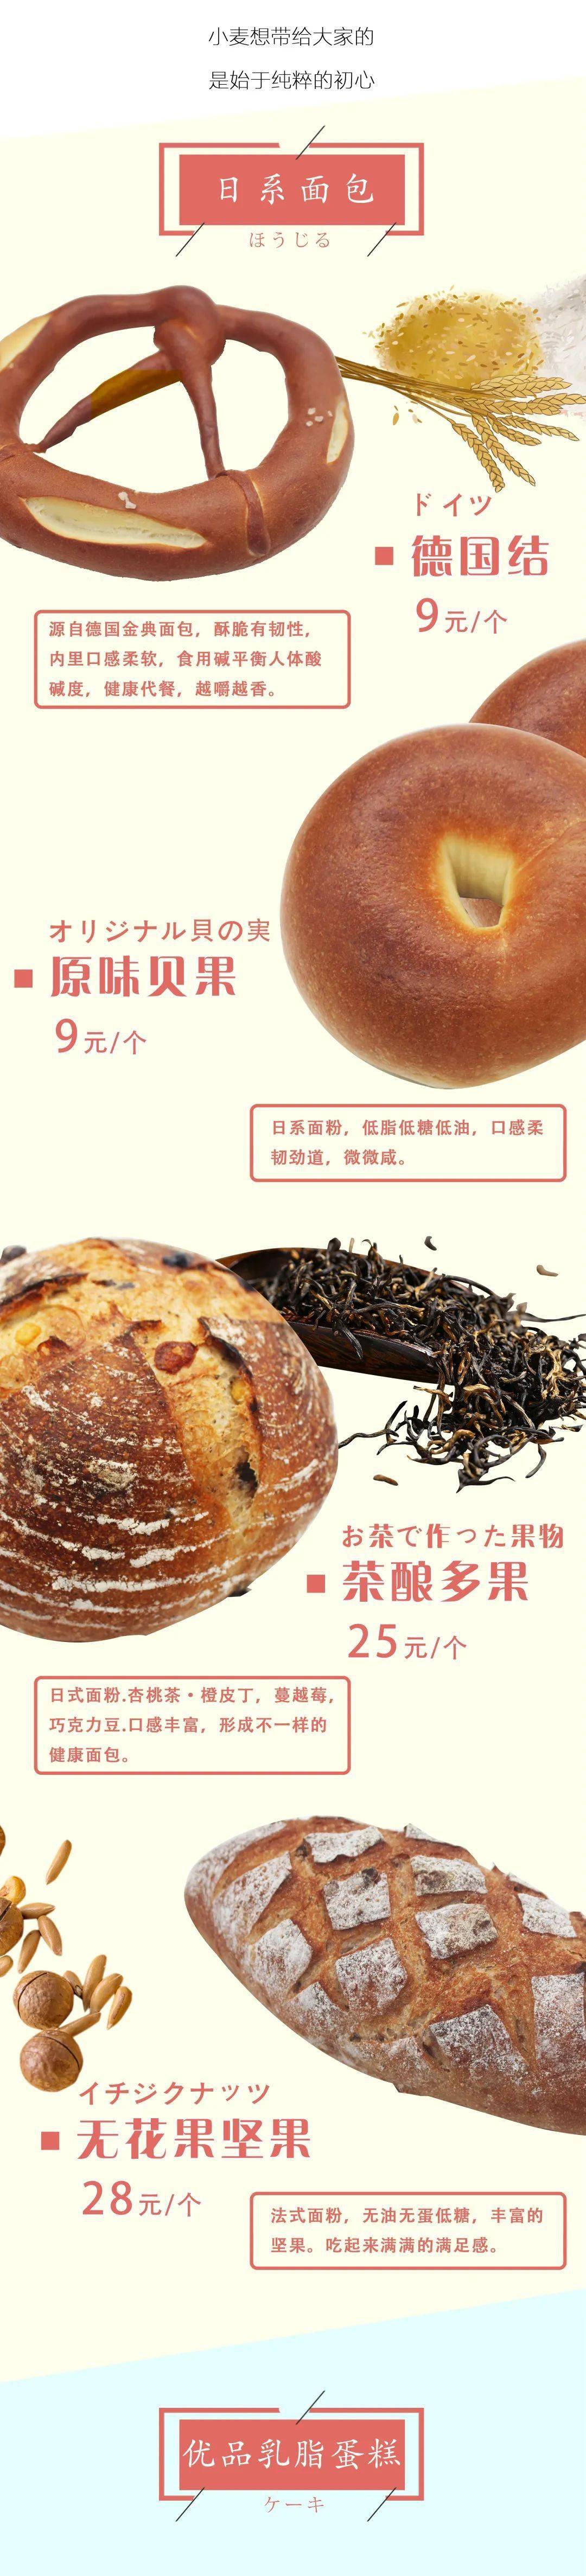 麦果优品丨汾湖日式面包店7.15全新上线，分享有礼！_搜狐汽车_搜狐网